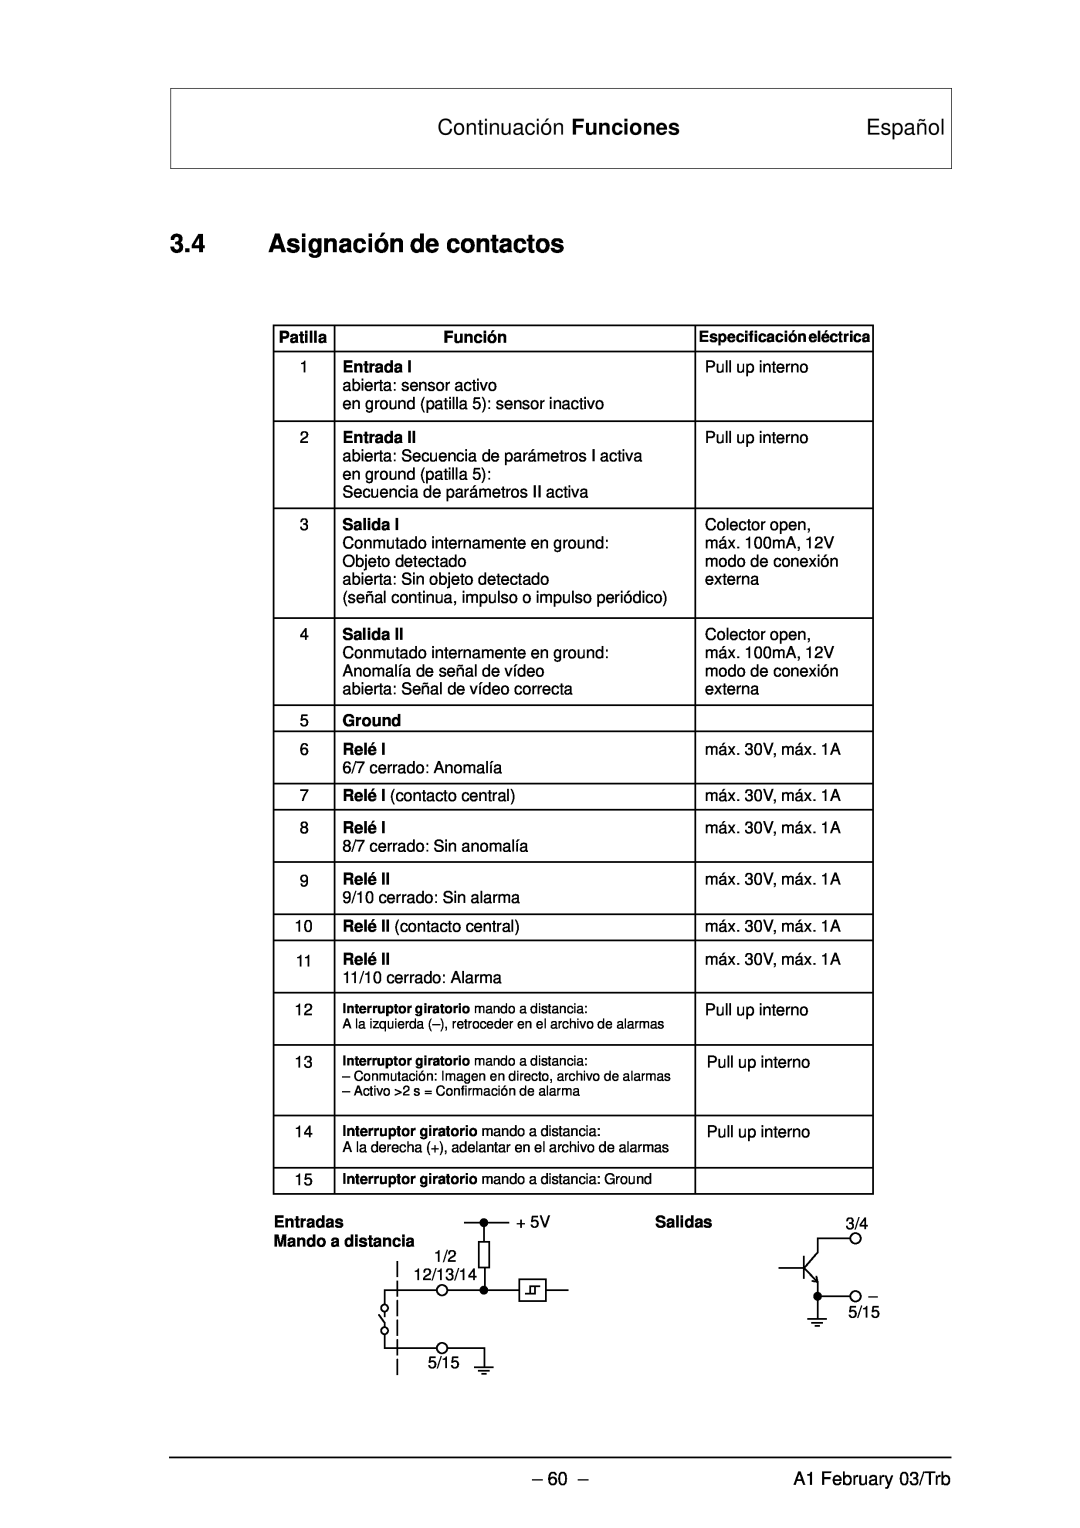 Bosch Appliances VMD01 M60 NTSC manual 3.4Asignación de contactos, Continuación Funciones, Español, A1 February 03/Trb 